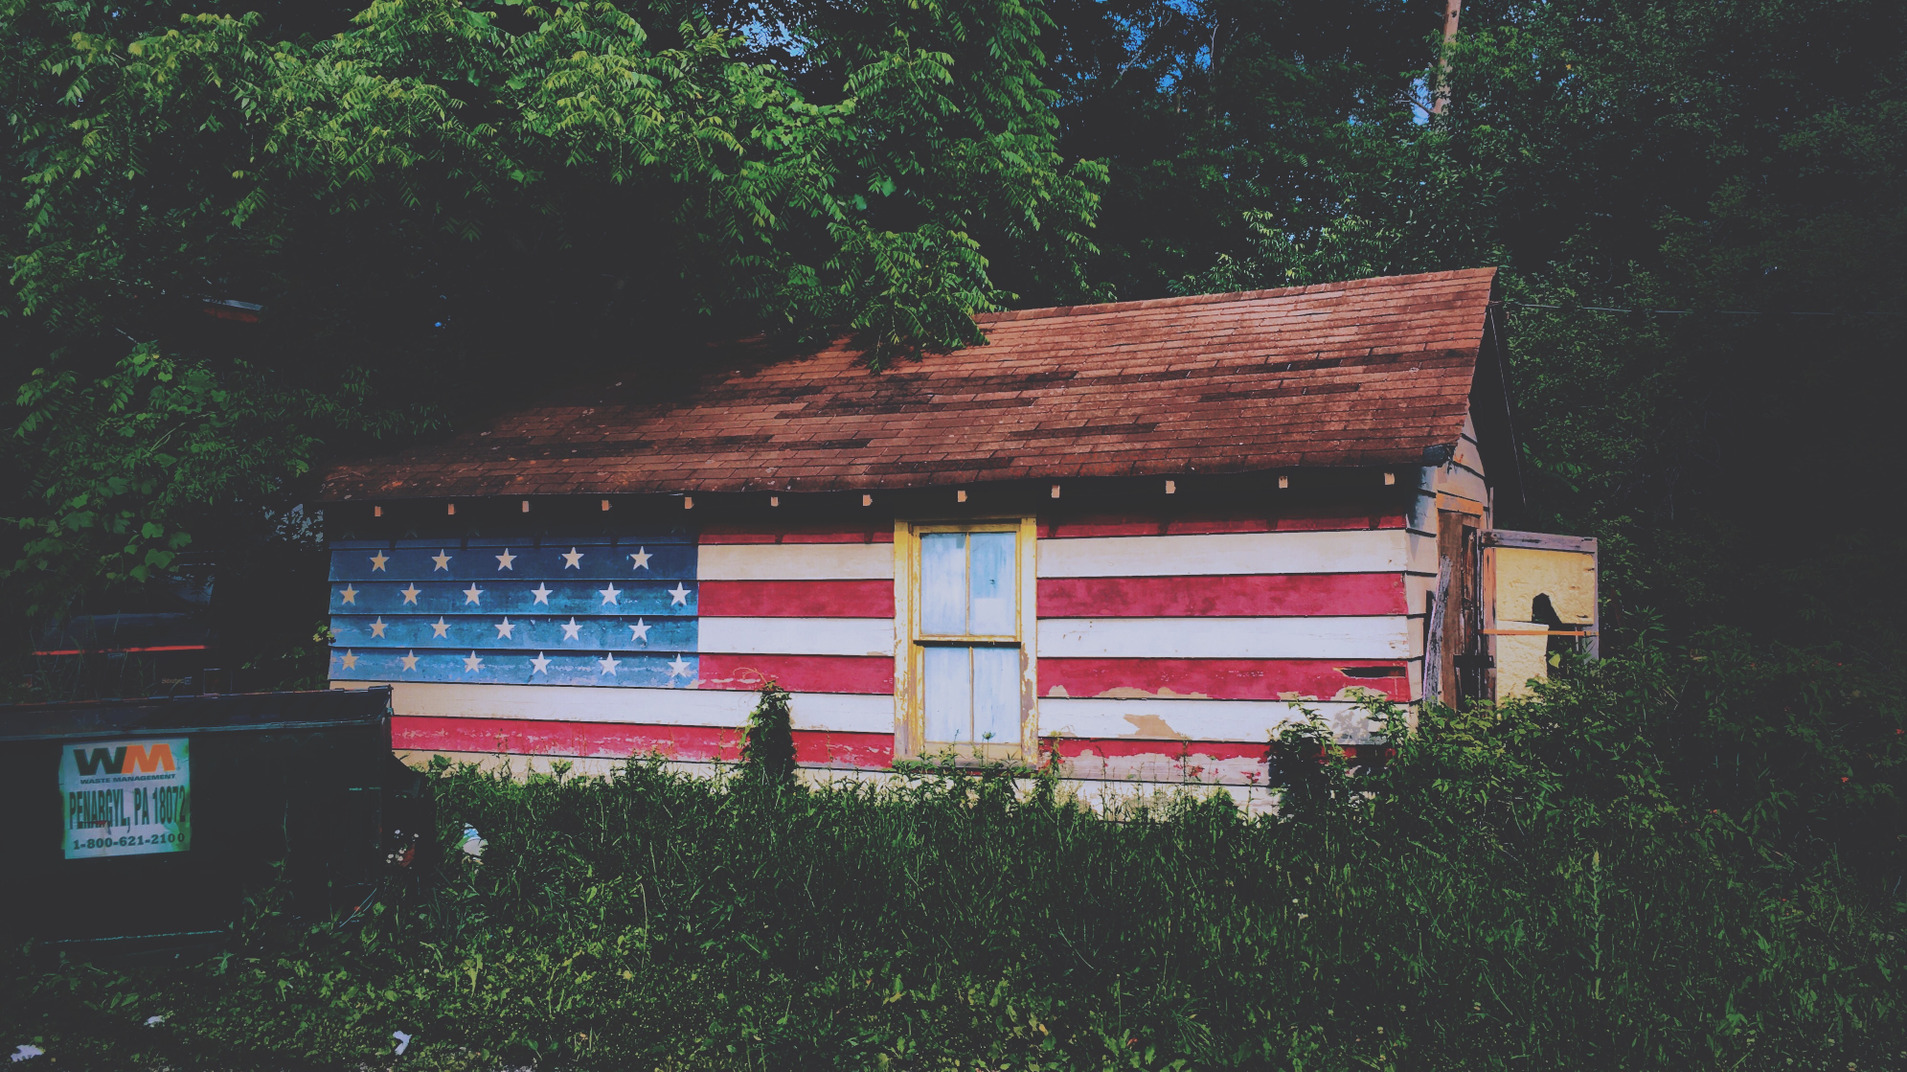 Casa pintada como una bandera americana